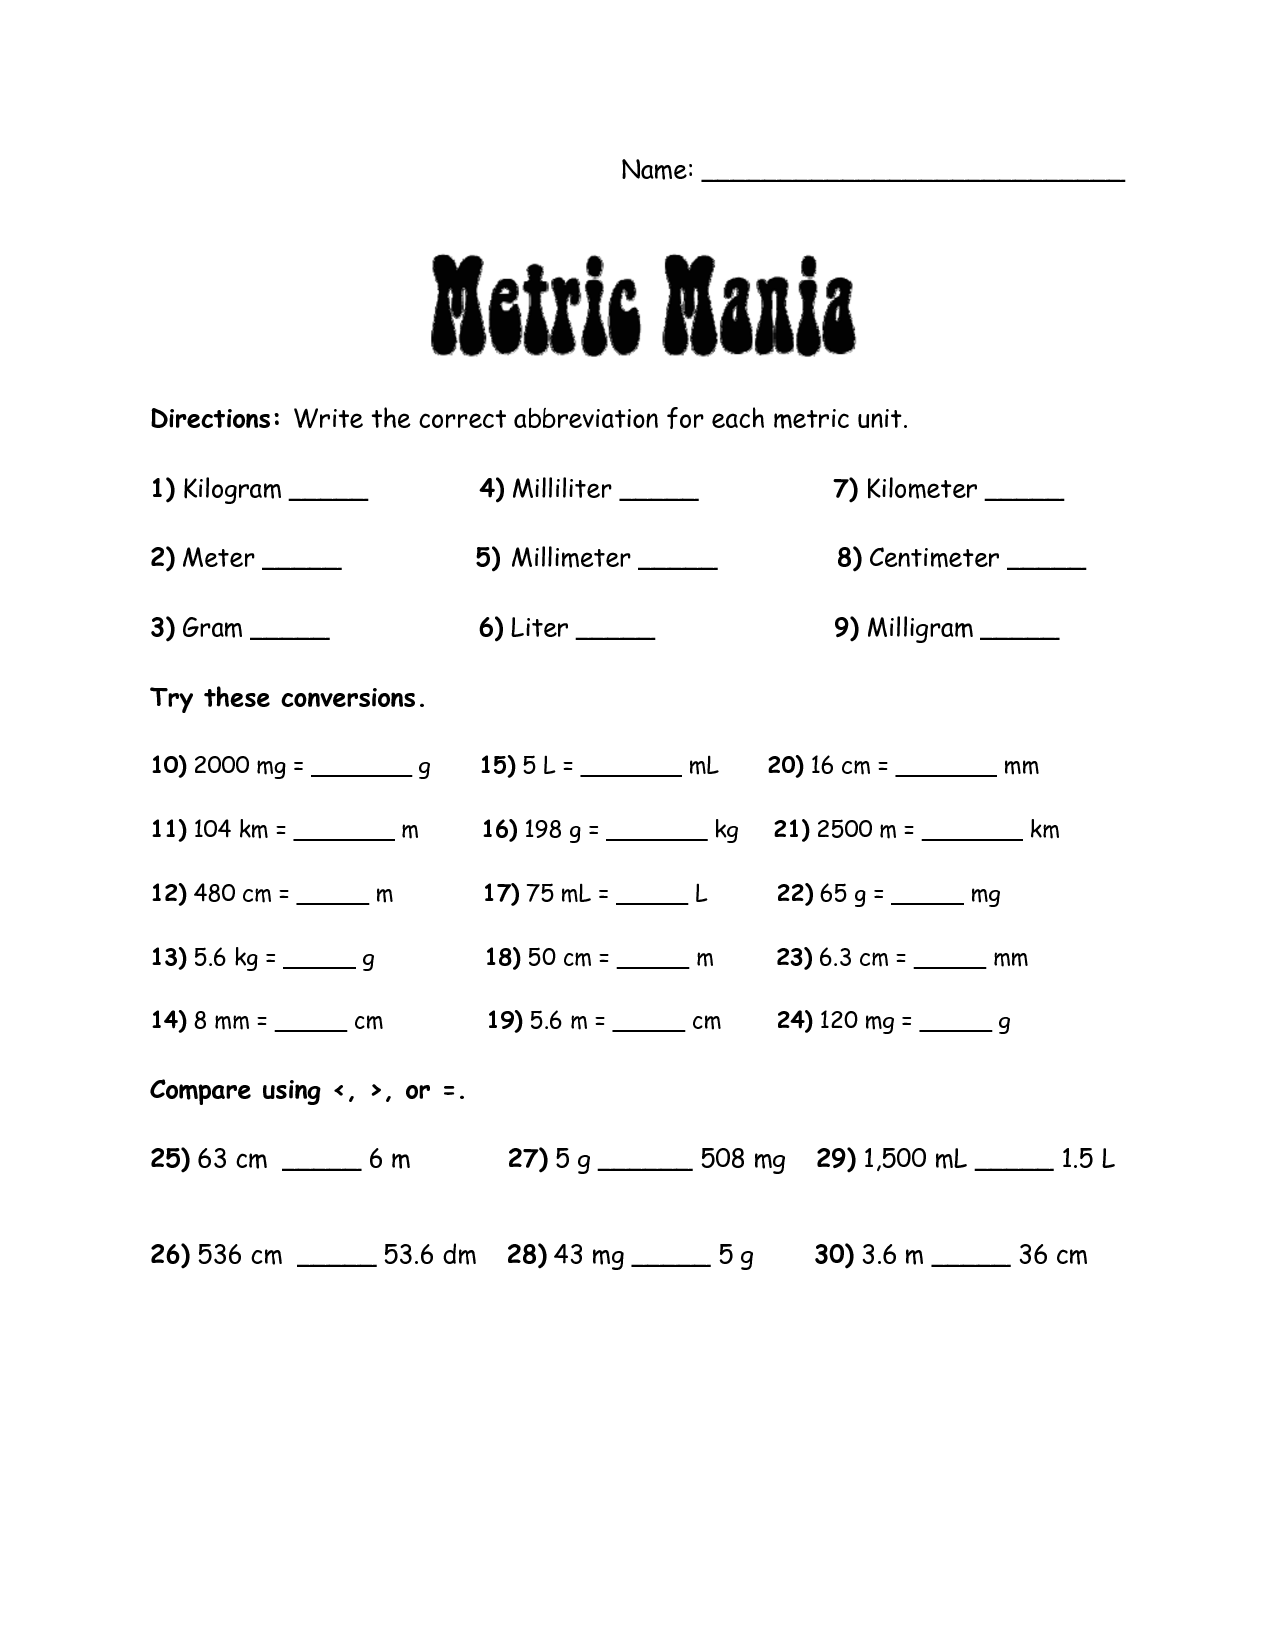 Metric Mania Conversion Worksheet Image